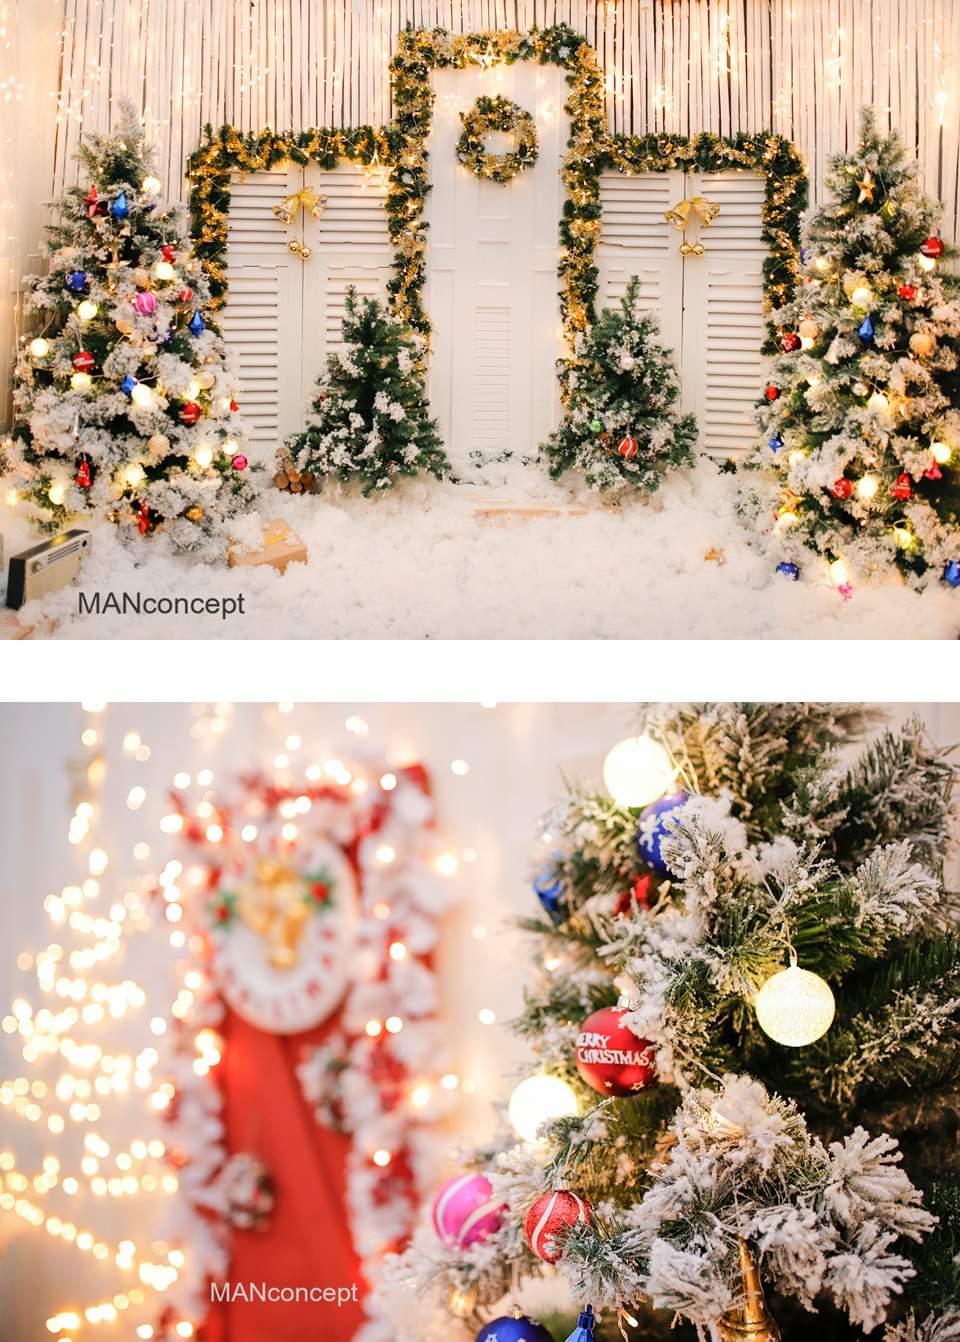 Tại Bình Thạnh, đồ trang trí Giáng sinh được bày bán với mức giá tuyệt vời. Hãy xem hình ảnh liên quan và chọn cho mình những món đồ trang trí Giáng sinh ấn tượng để tạo nên không khí lễ hội đầy ấm áp và ấn tượng nhất.